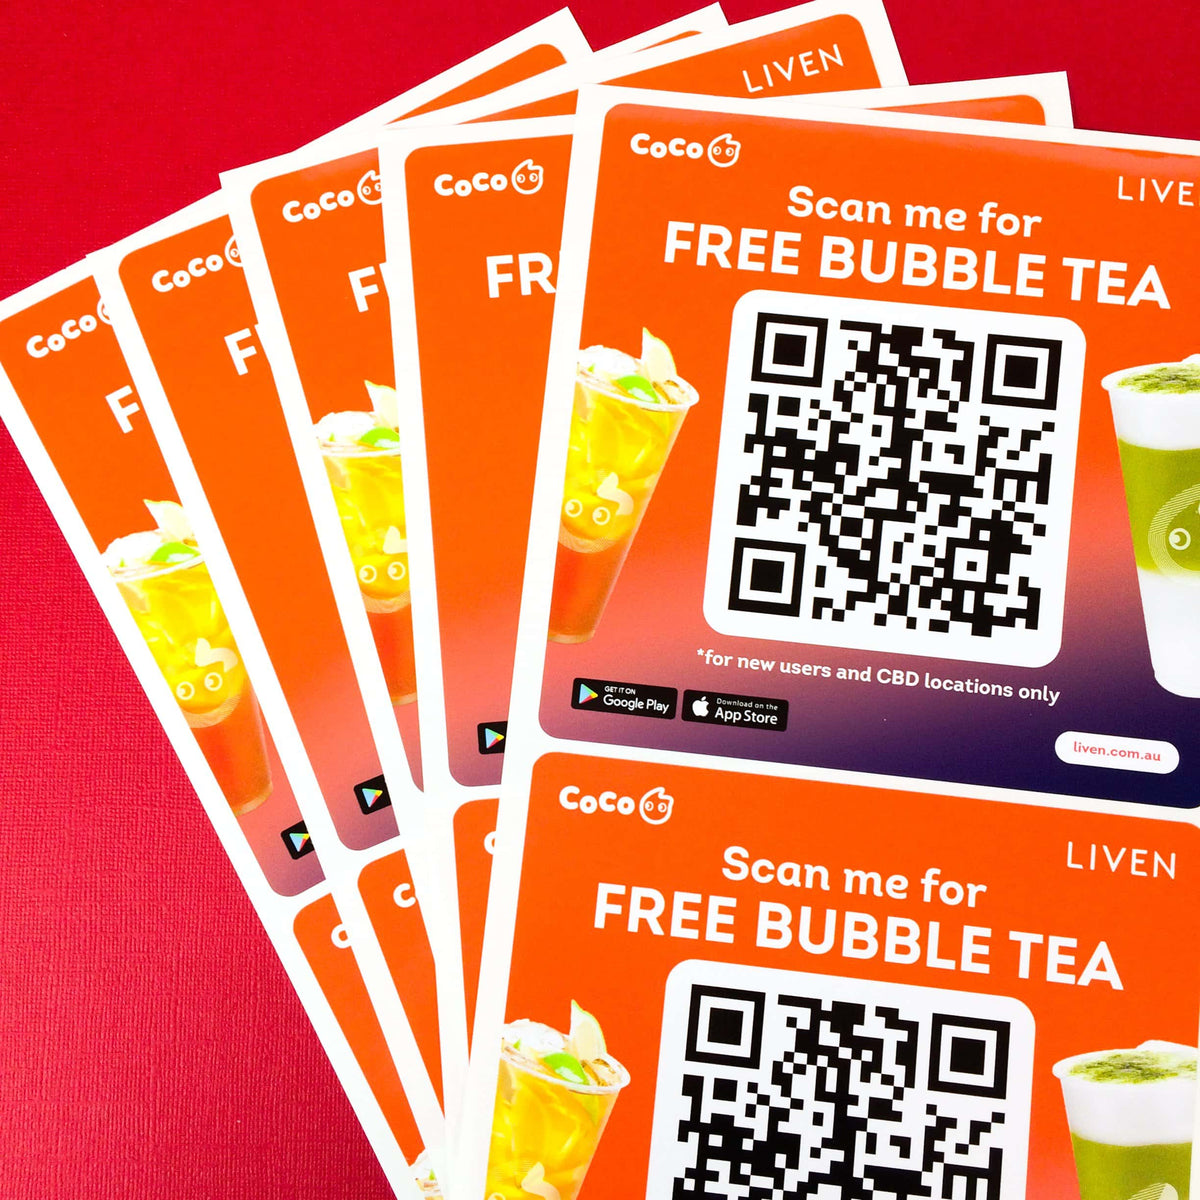 Custom Free CoCo Bubble Tea promo QR code Square Sheet Label Stickers.   